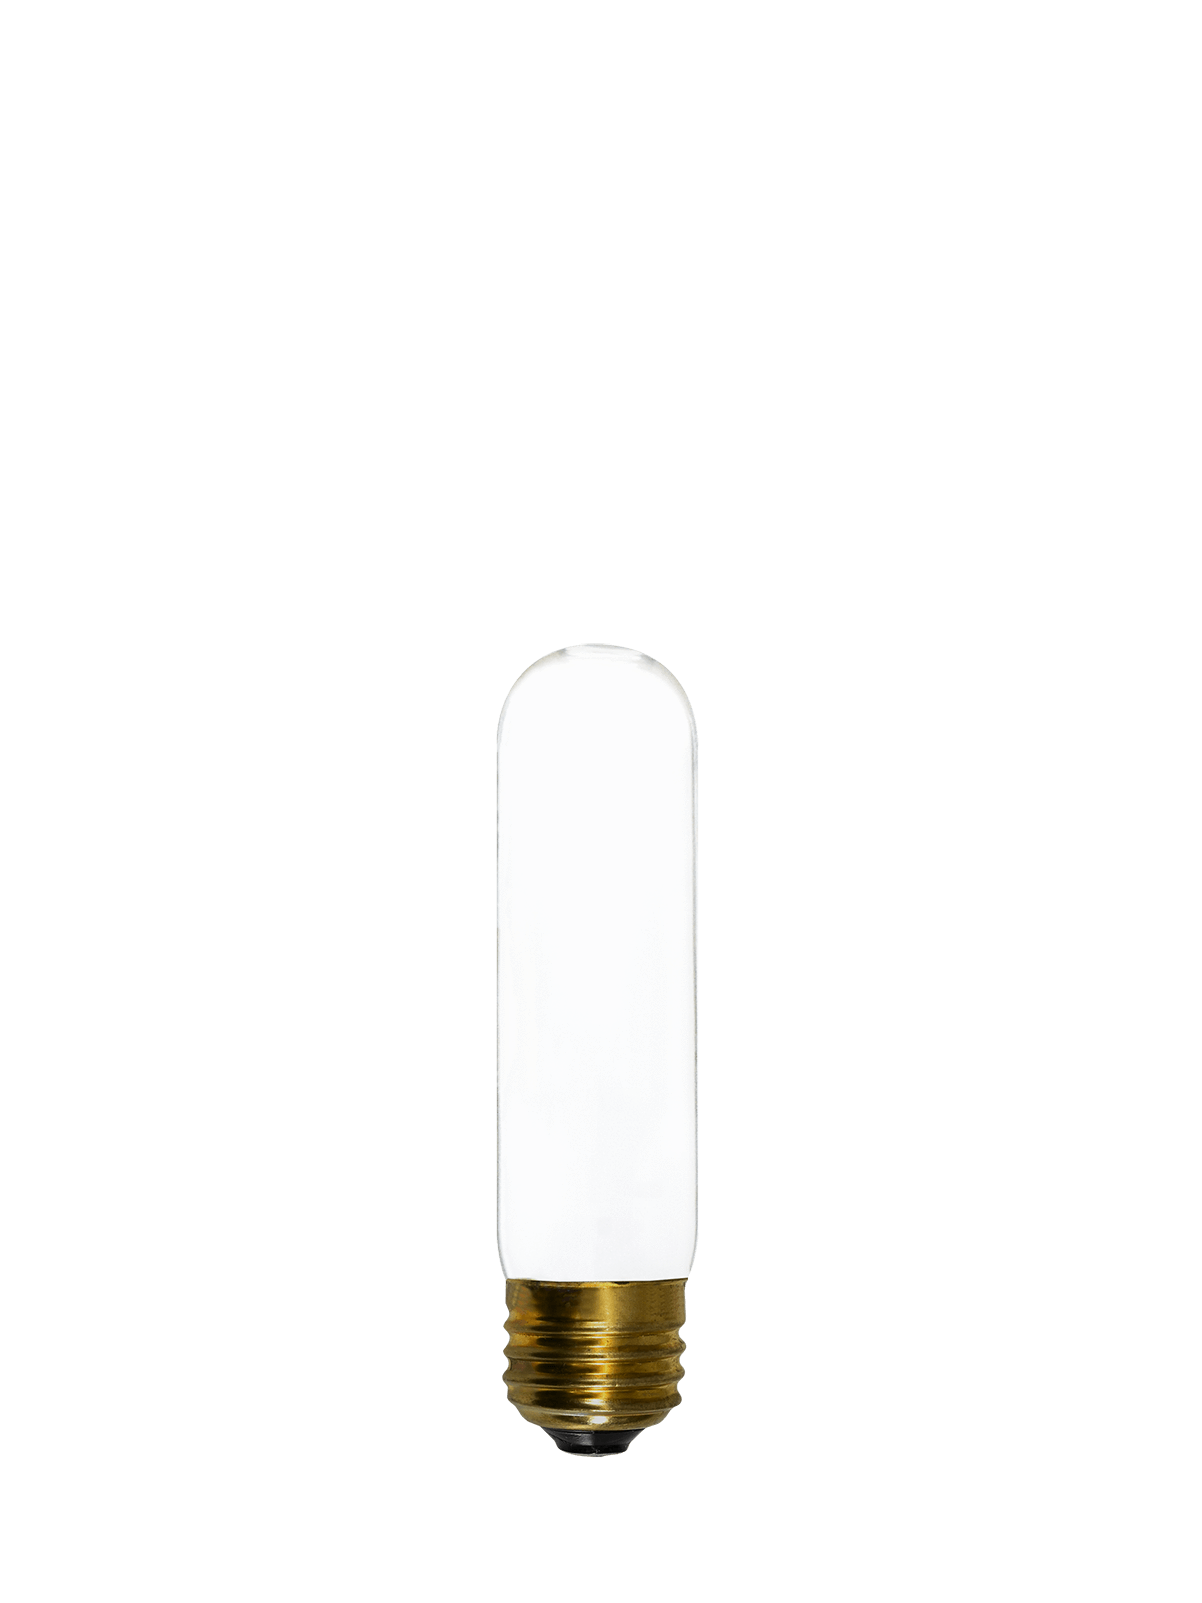 Bulb: LED - White Tube Hangout Lighting 